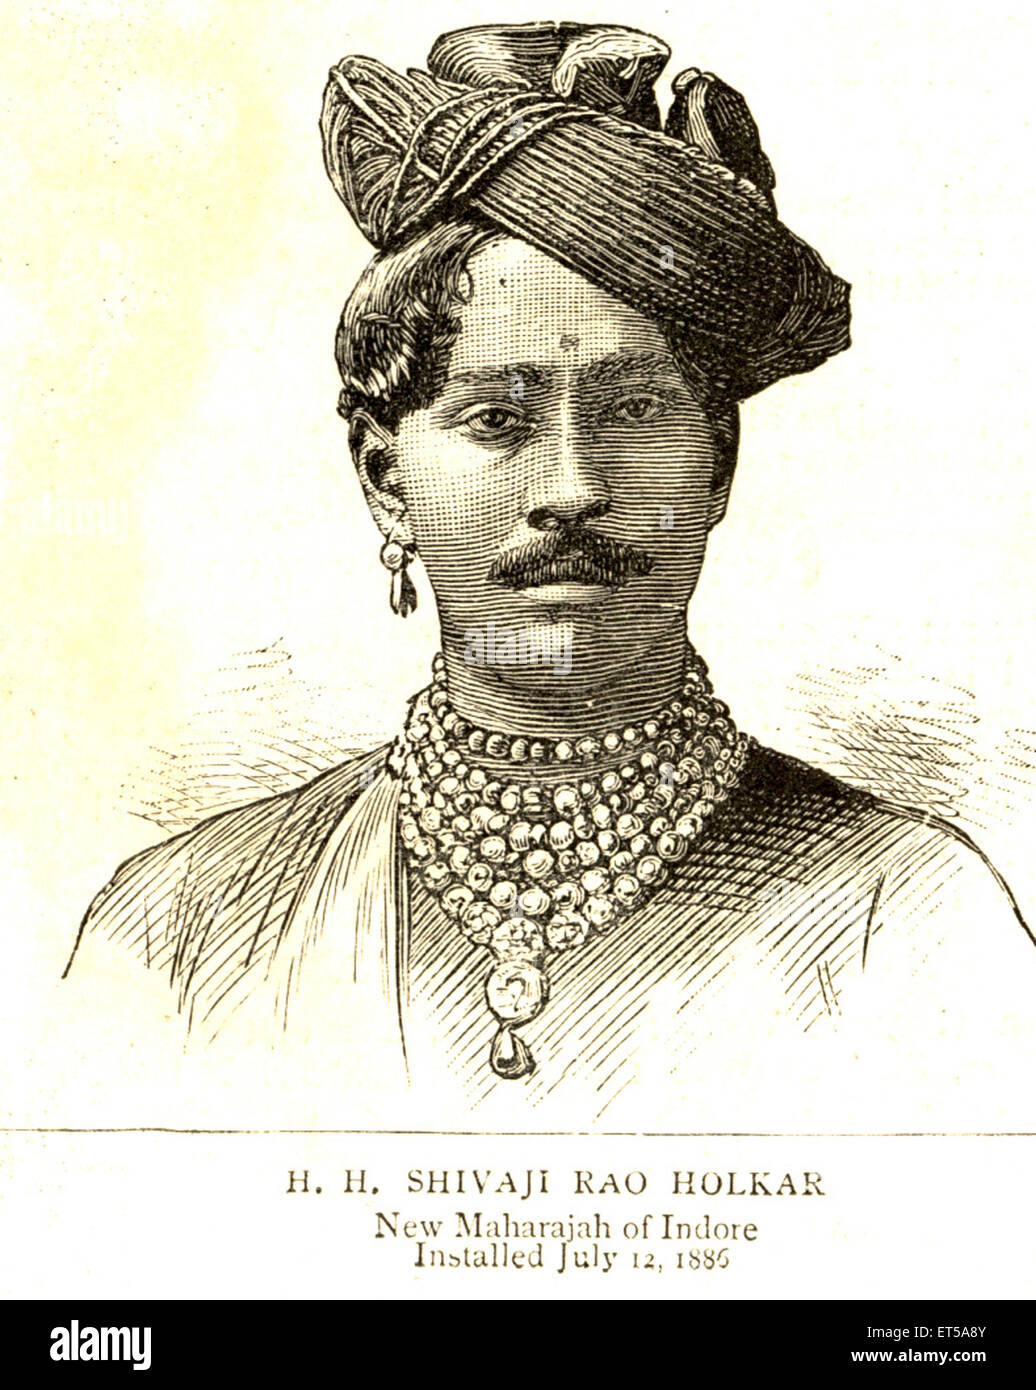 Lithografischen Porträts installiert H.H Shivaji Rao Holker neue Maharadscha von Indore 12. Juli 1886; Madhya Pradesh Stockfoto